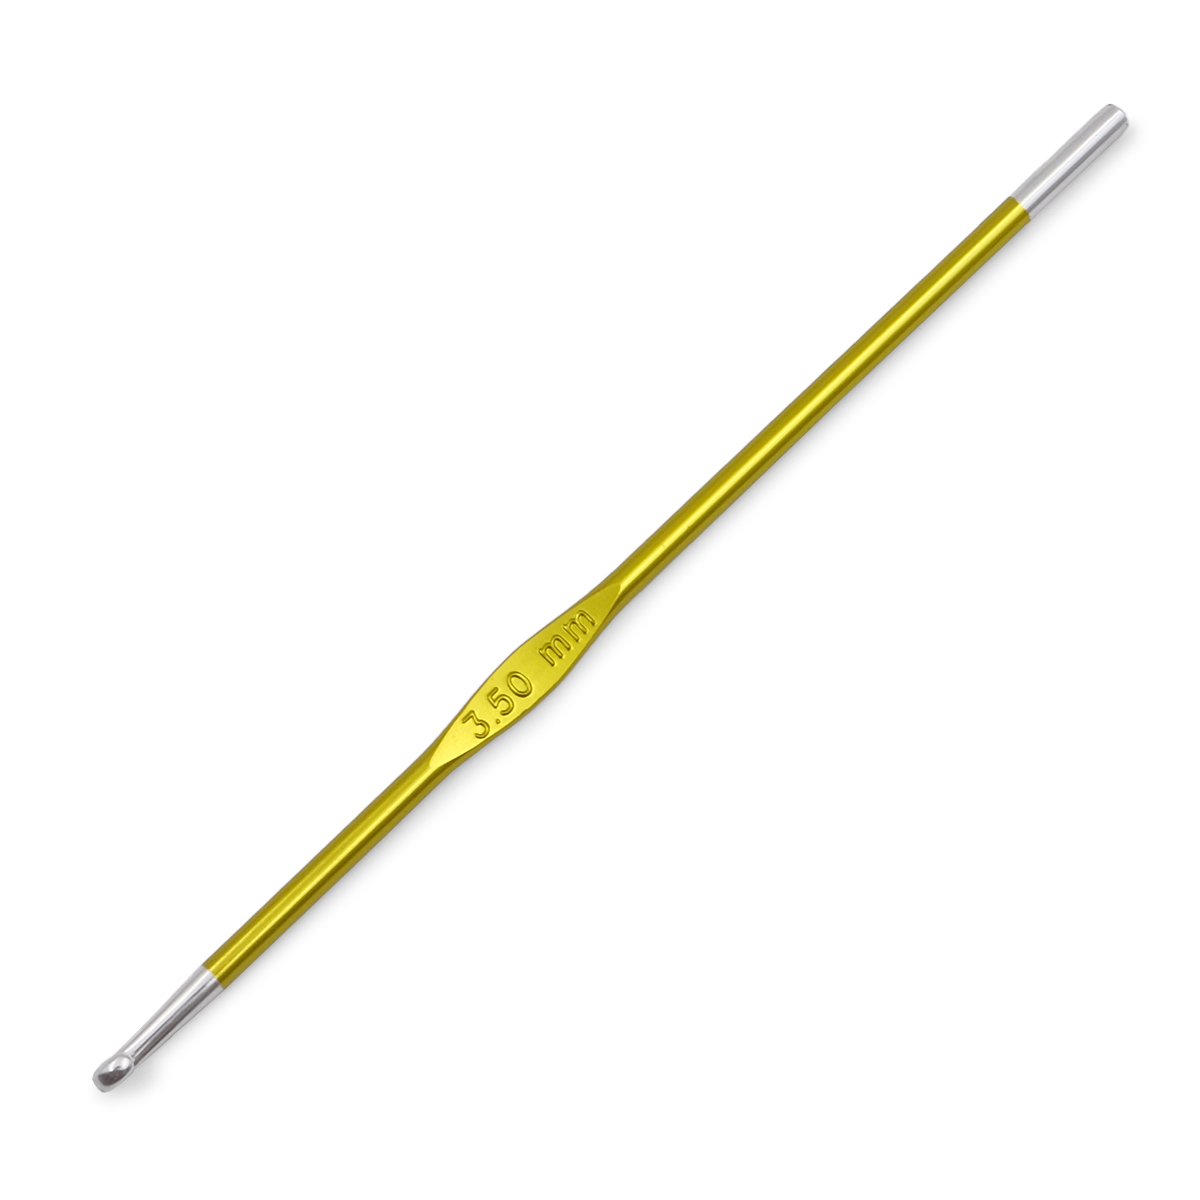 Крючок для вязания Zing 3,5мм, алюминий, хризолитовый, KnitPro